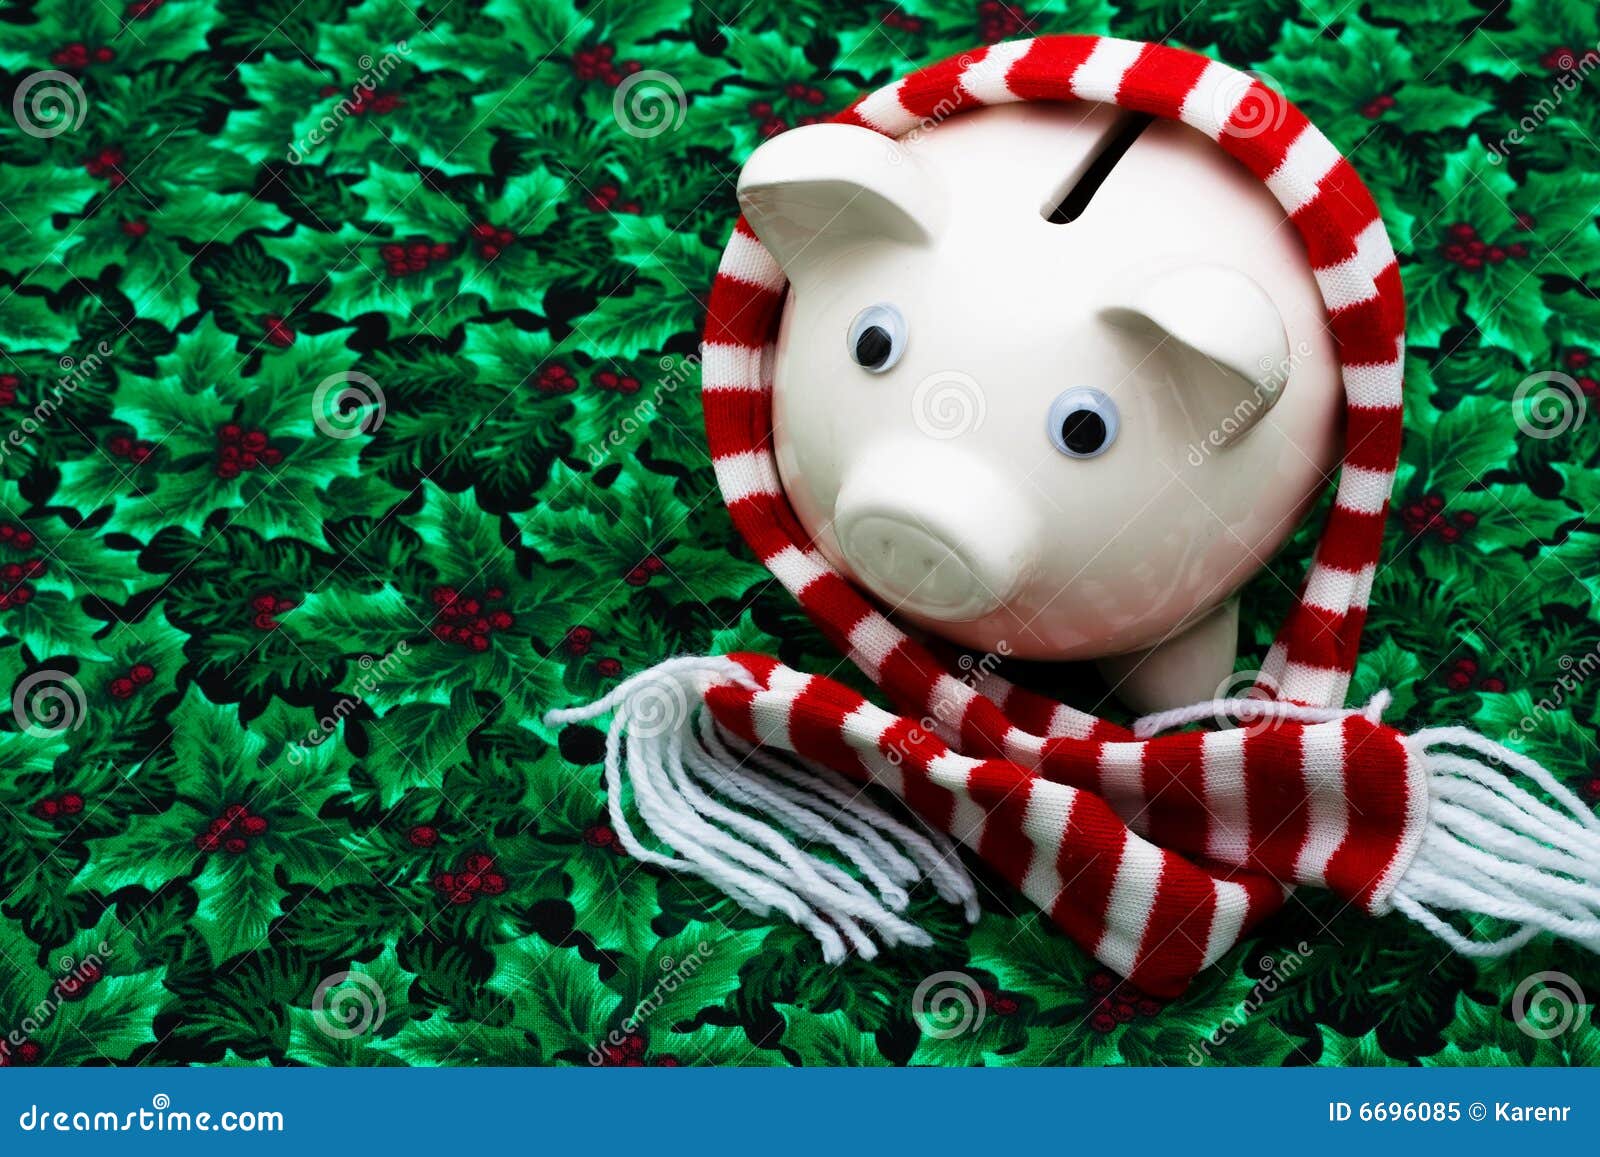 сбережения рождества. шарф листьев падуба зеленого цвета рождества ягоды банка предпосылки веселый piggy striped носить